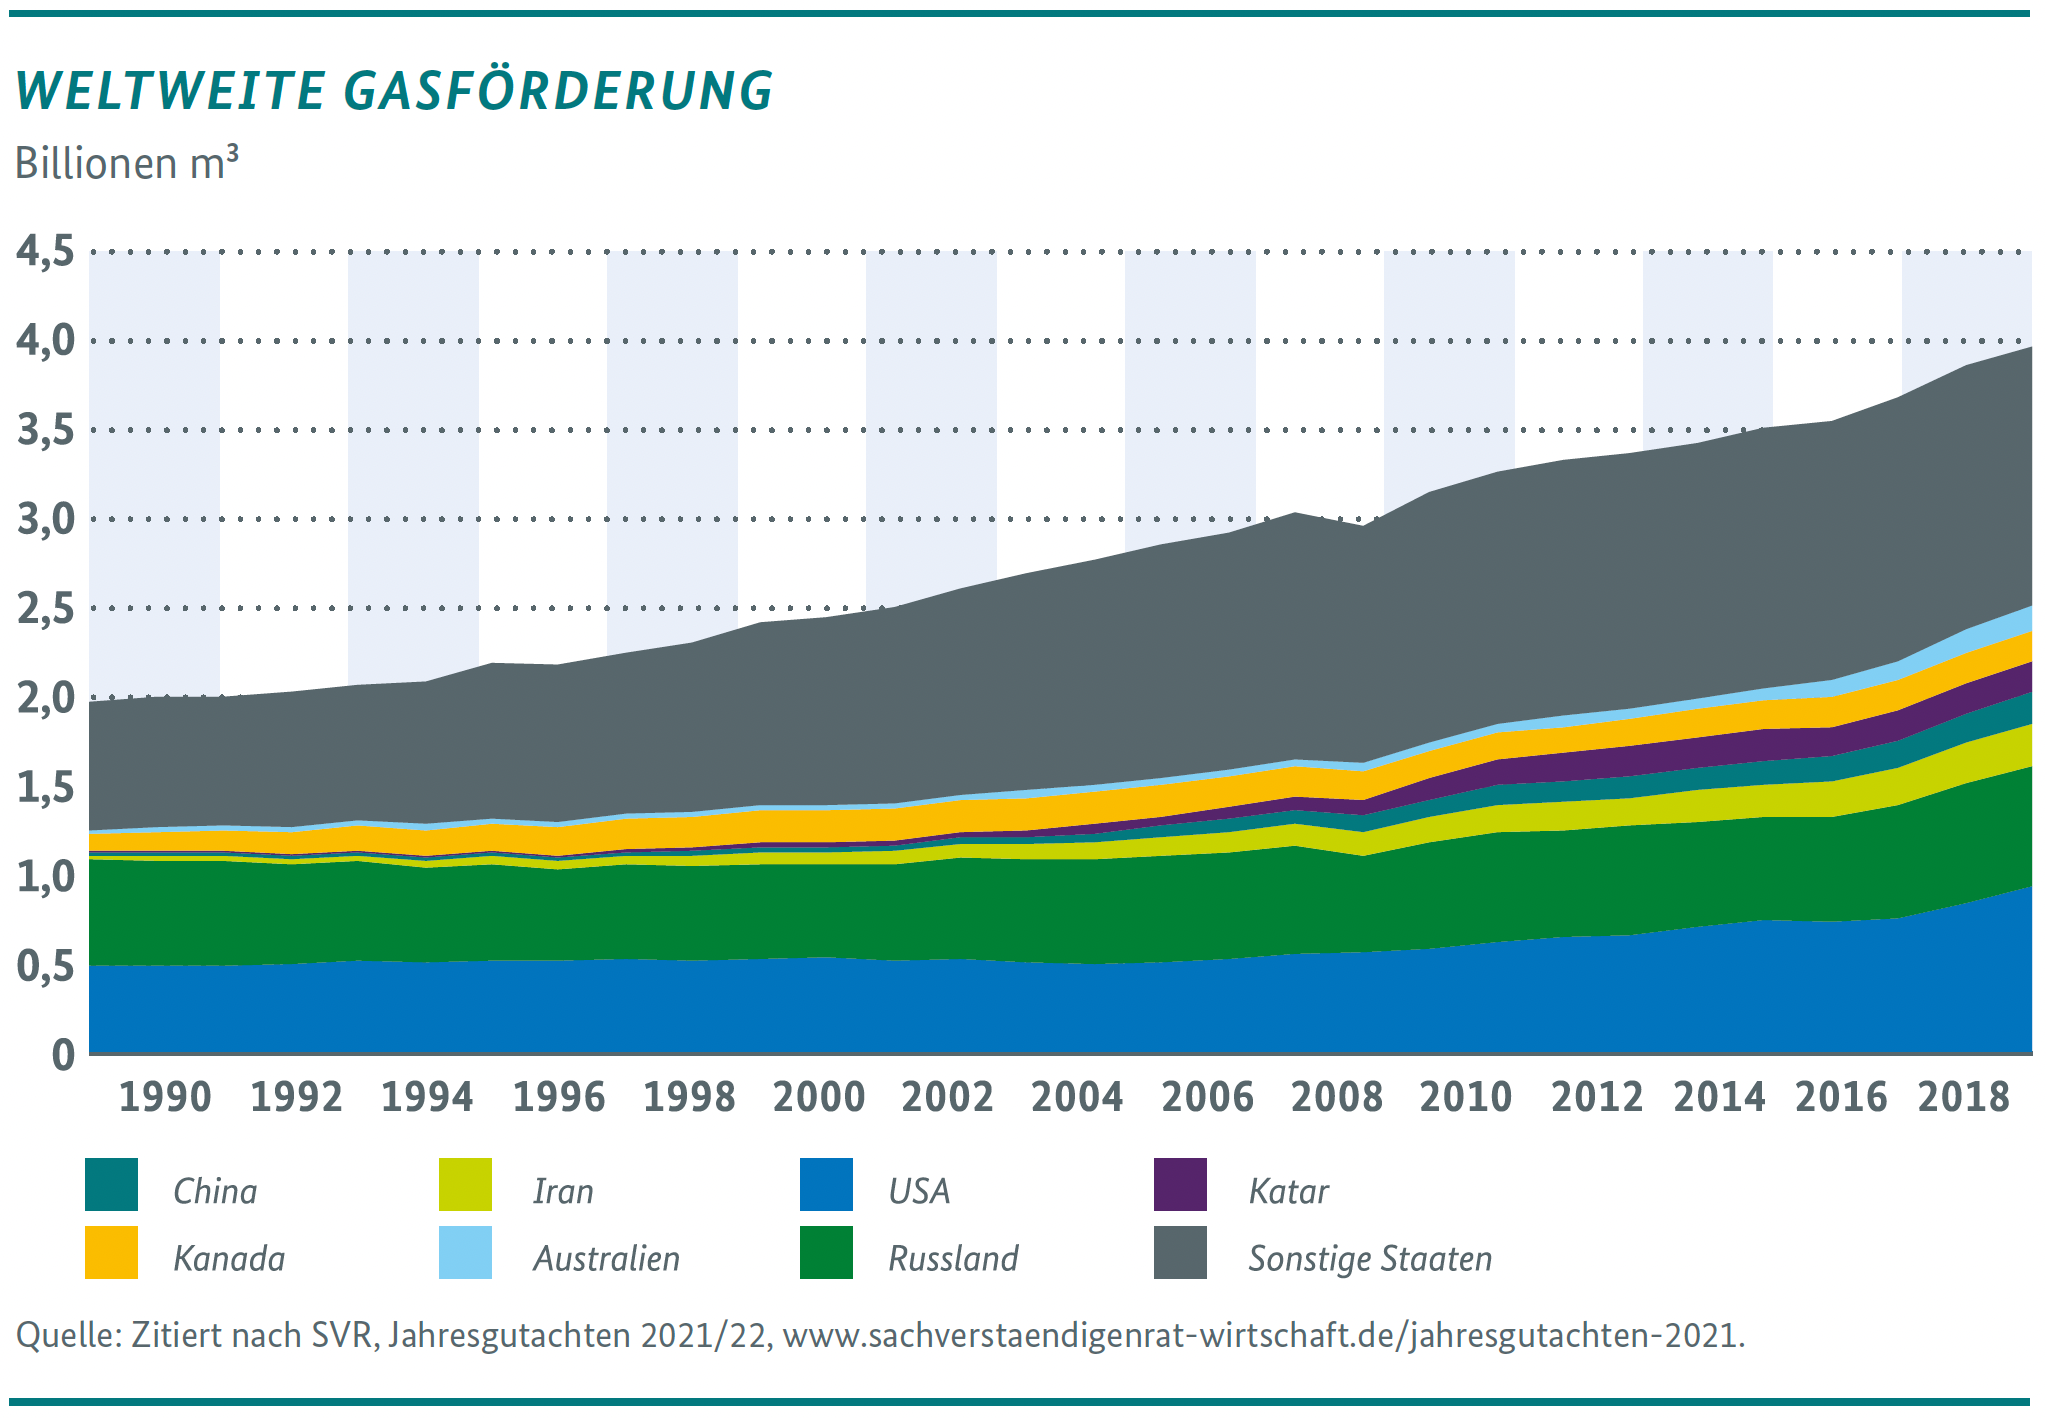 Grafik zur weltweiten Gasförderung